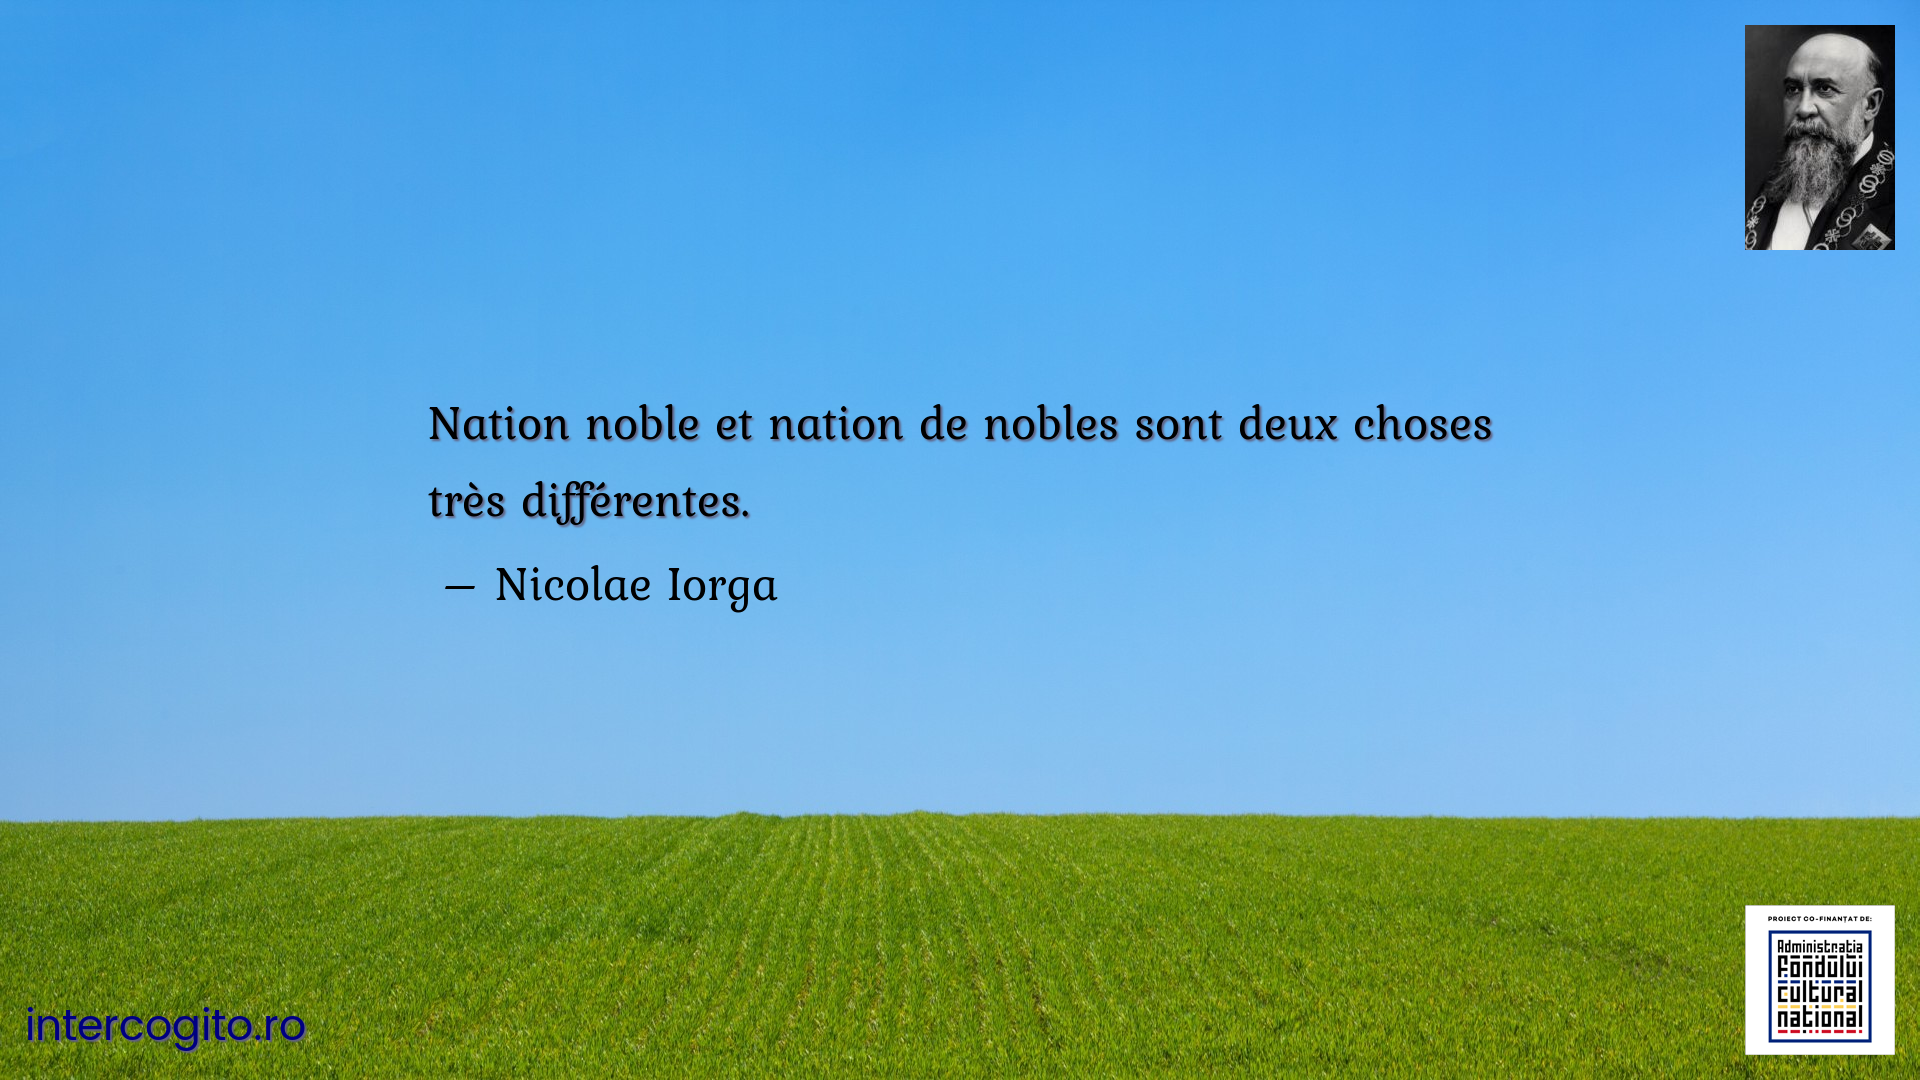 Nation noble et nation de nobles sont deux choses très différentes.